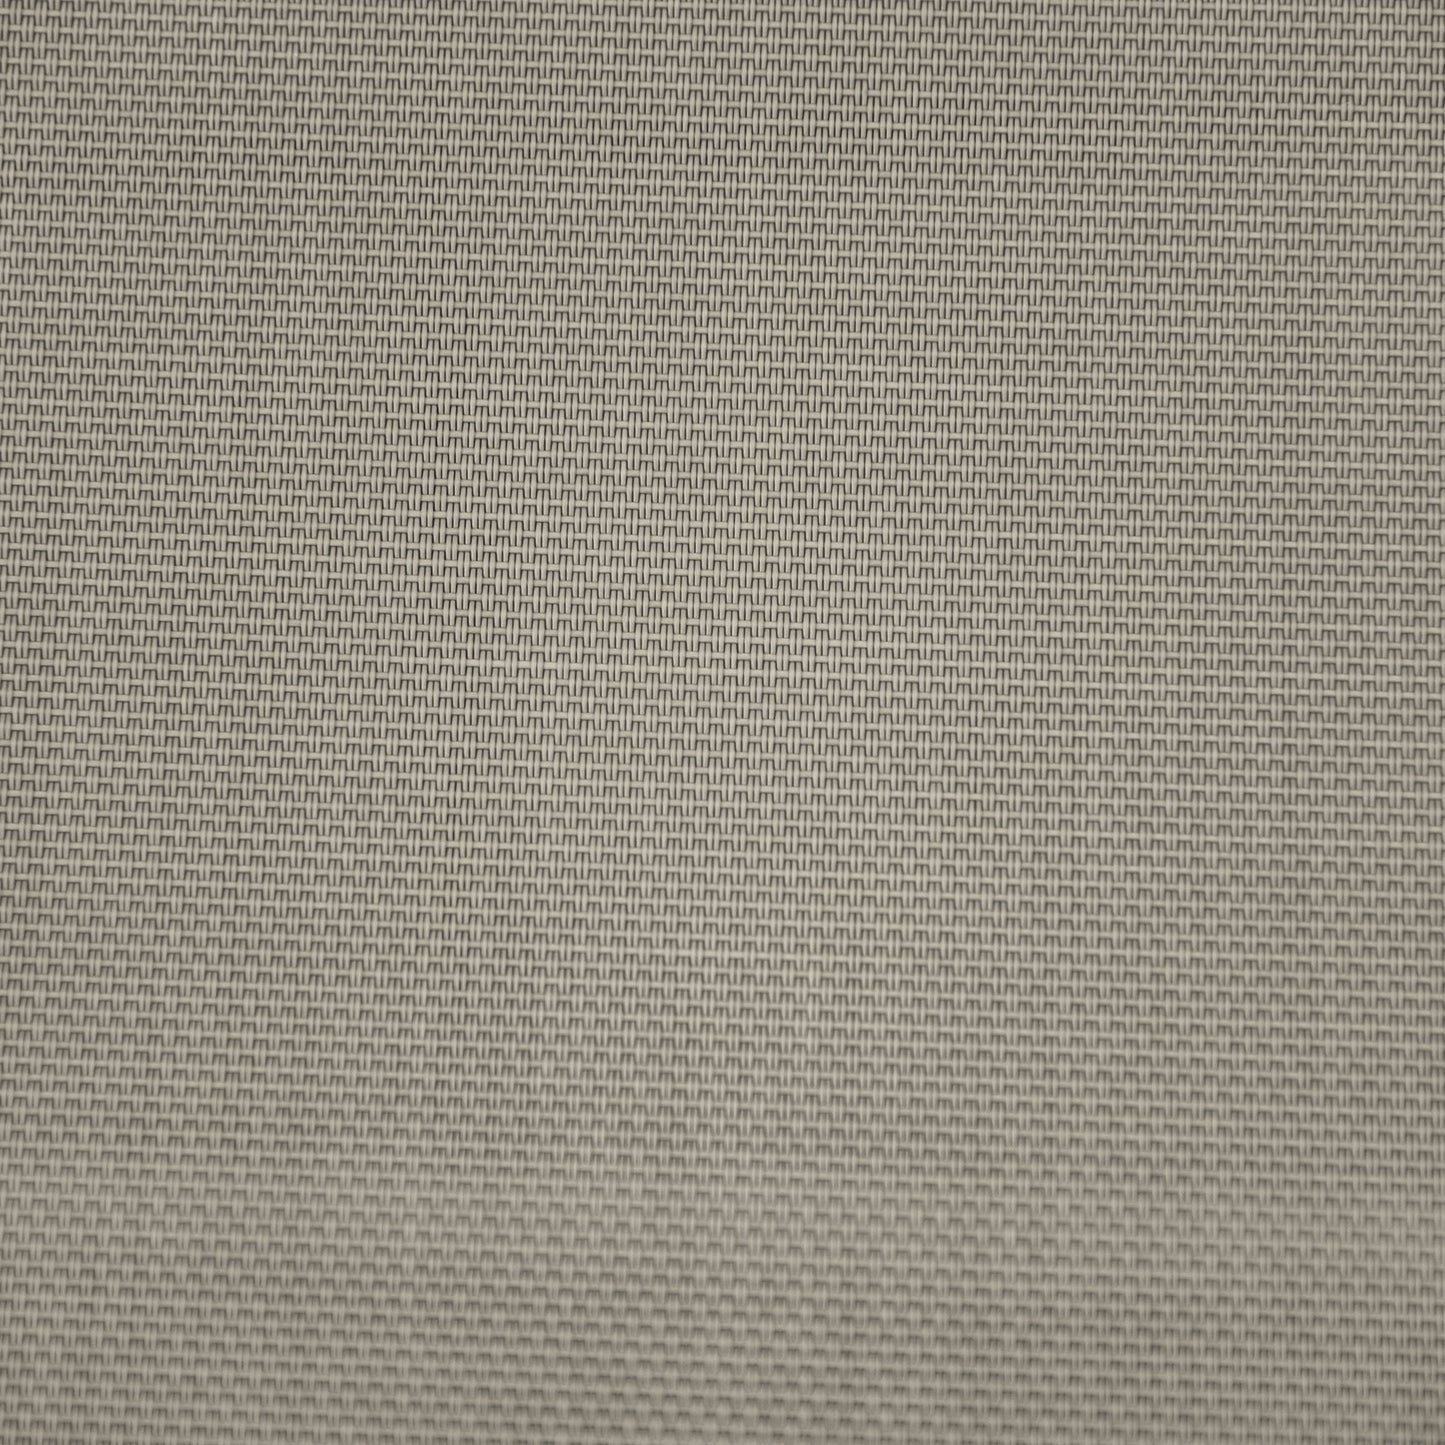 Chaise de jardin Nancy's Fort Myers - Chaise longue - Aluminium - Blanc argenté/gris clair - 165 x 61 x 63 cm